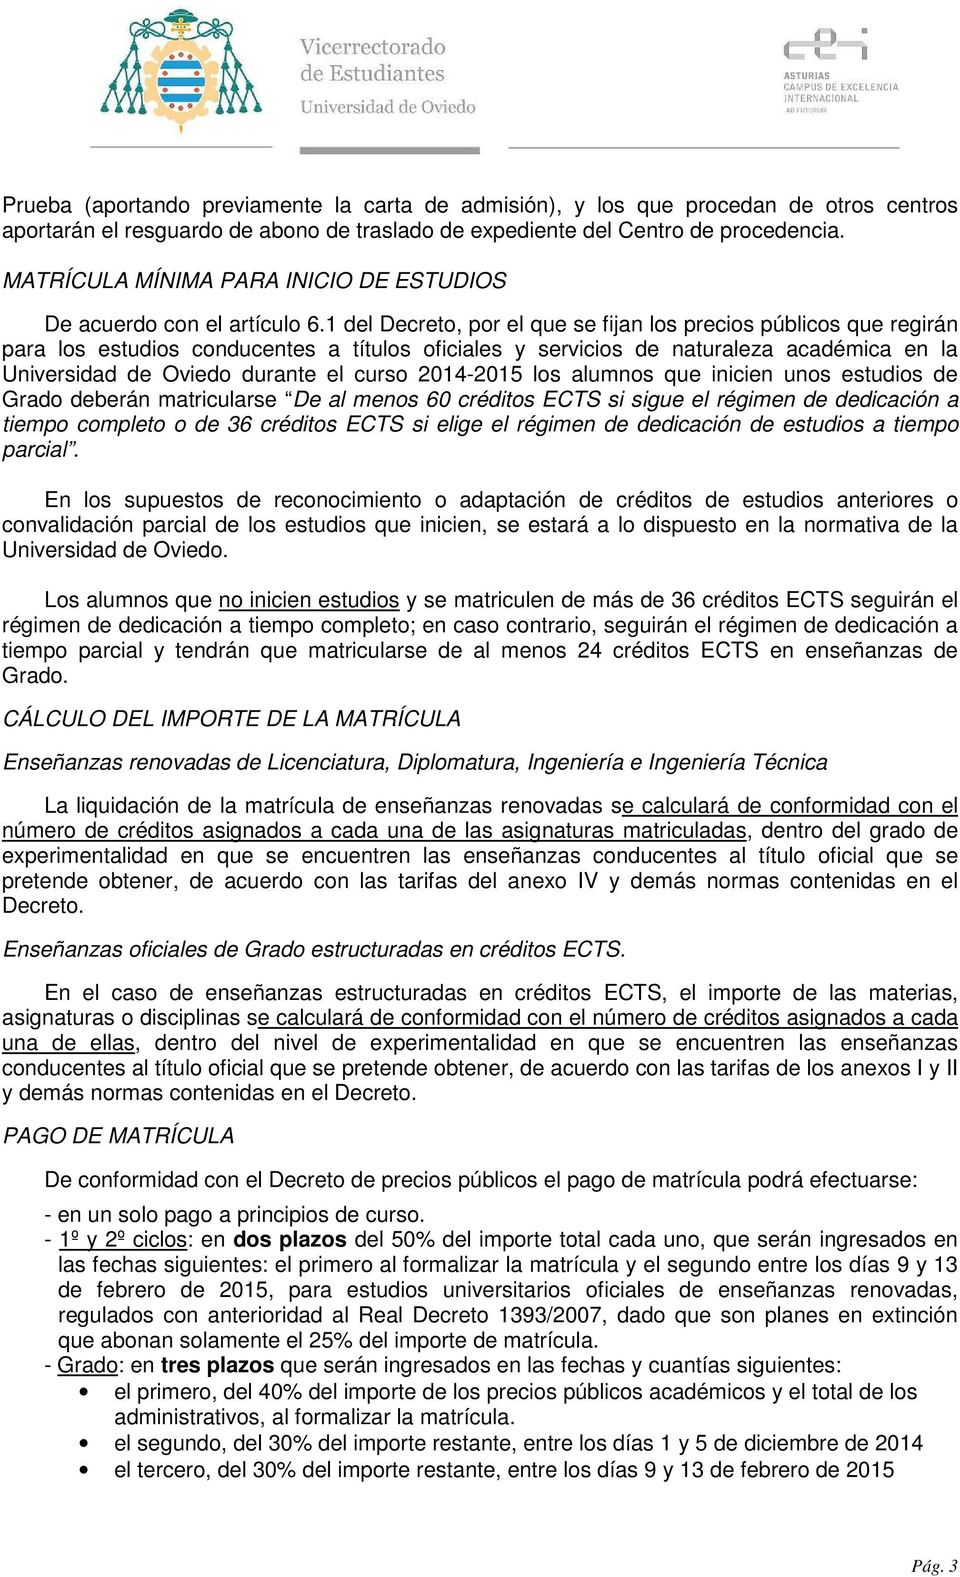 1 del Decreto, por el que se fijan los precios públicos que regirán para los estudios conducentes a títulos oficiales y servicios de naturaleza académica en la Universidad de Oviedo durante el curso